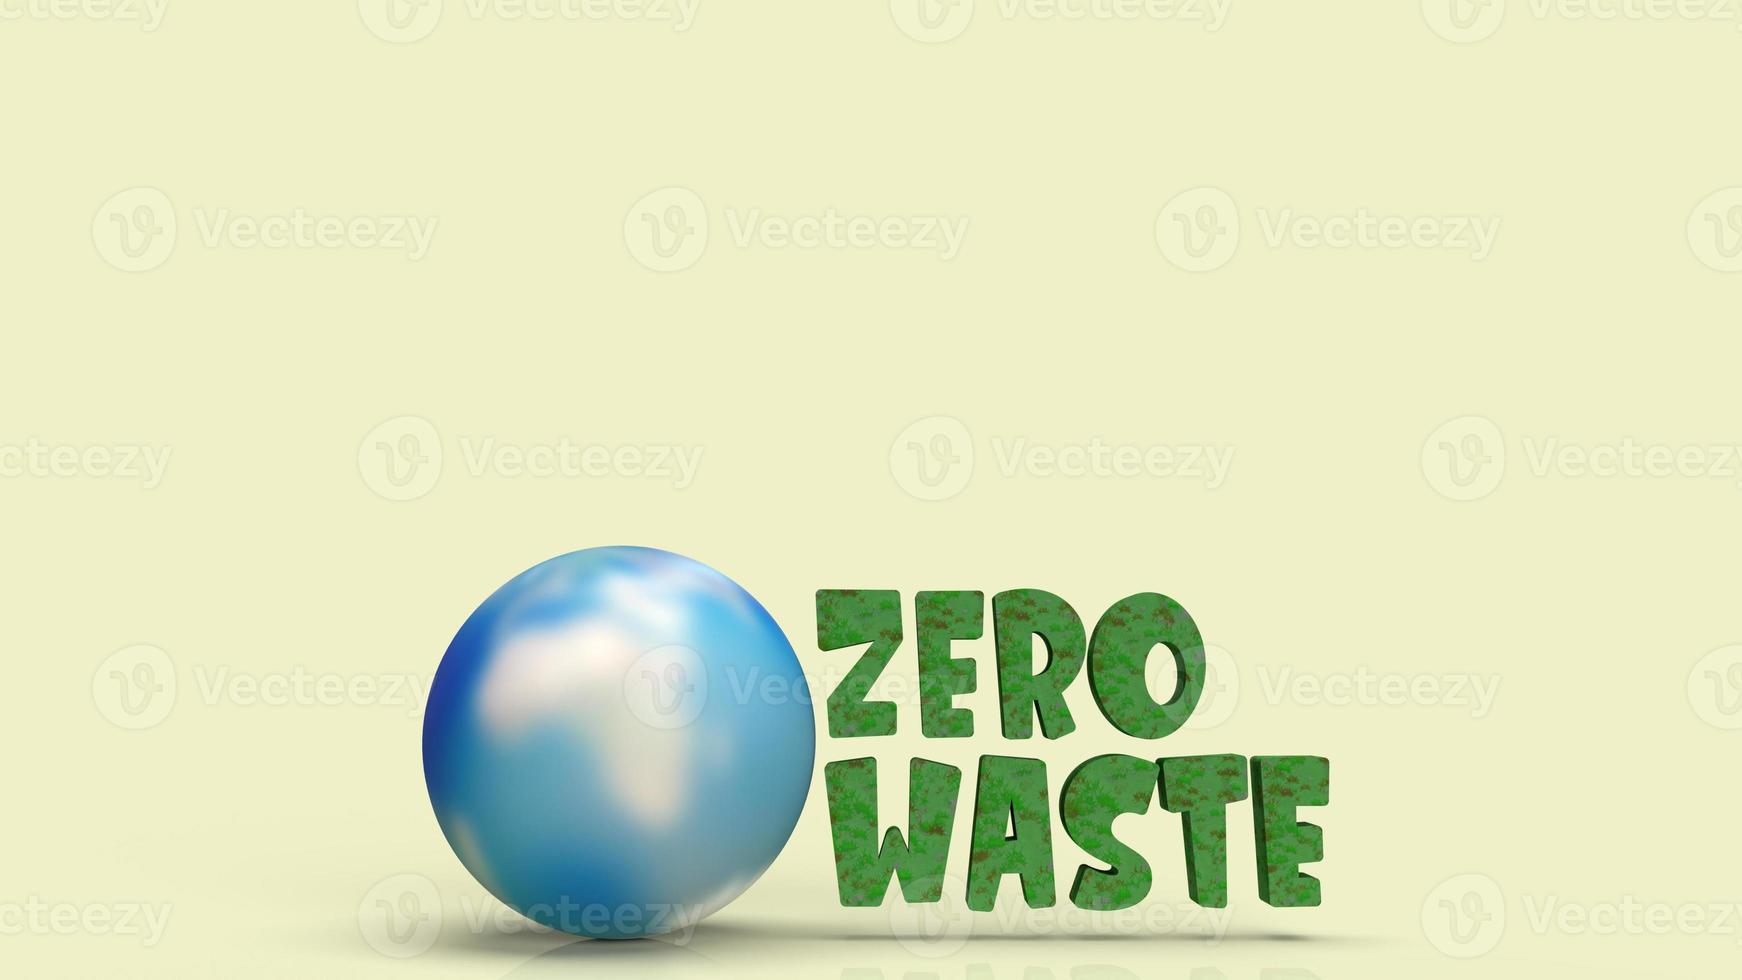 Zero waste text och världs 3d-rendering för ekologiskt innehåll. foto